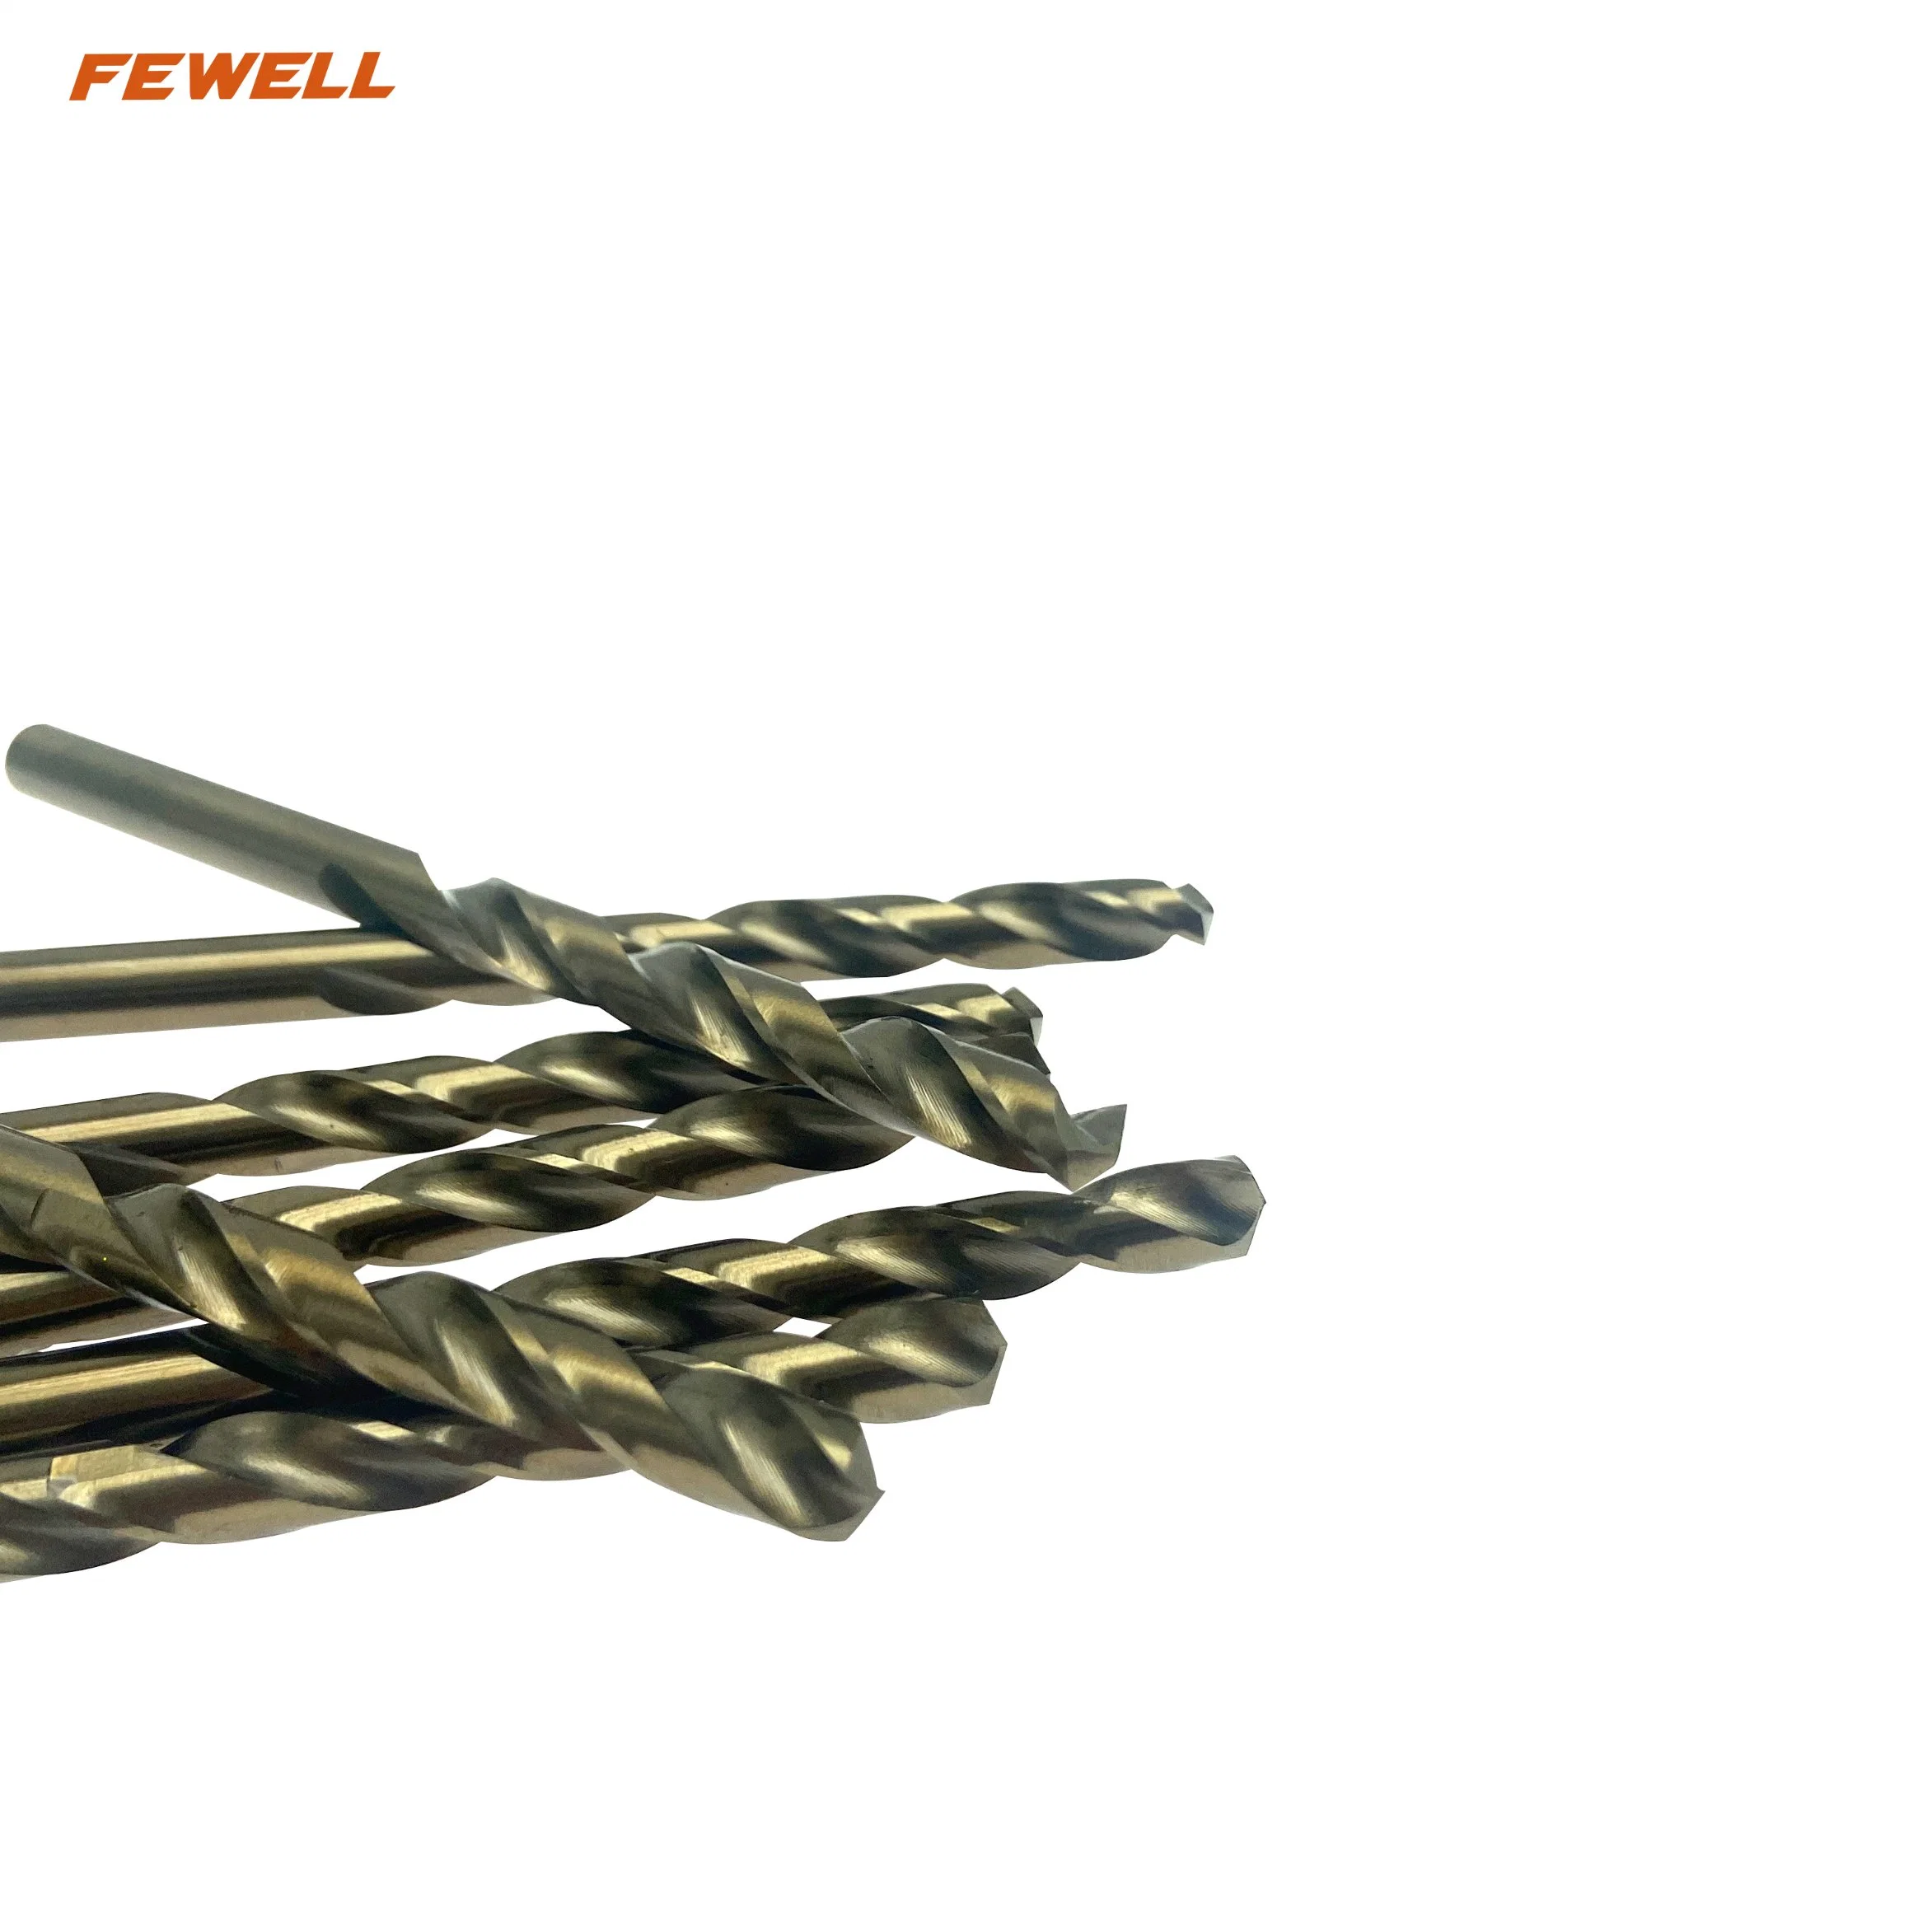 6mm M2 6542 HSS High Speed Steel Twist Drill Bits for Drilling Metal Iron Aluminum